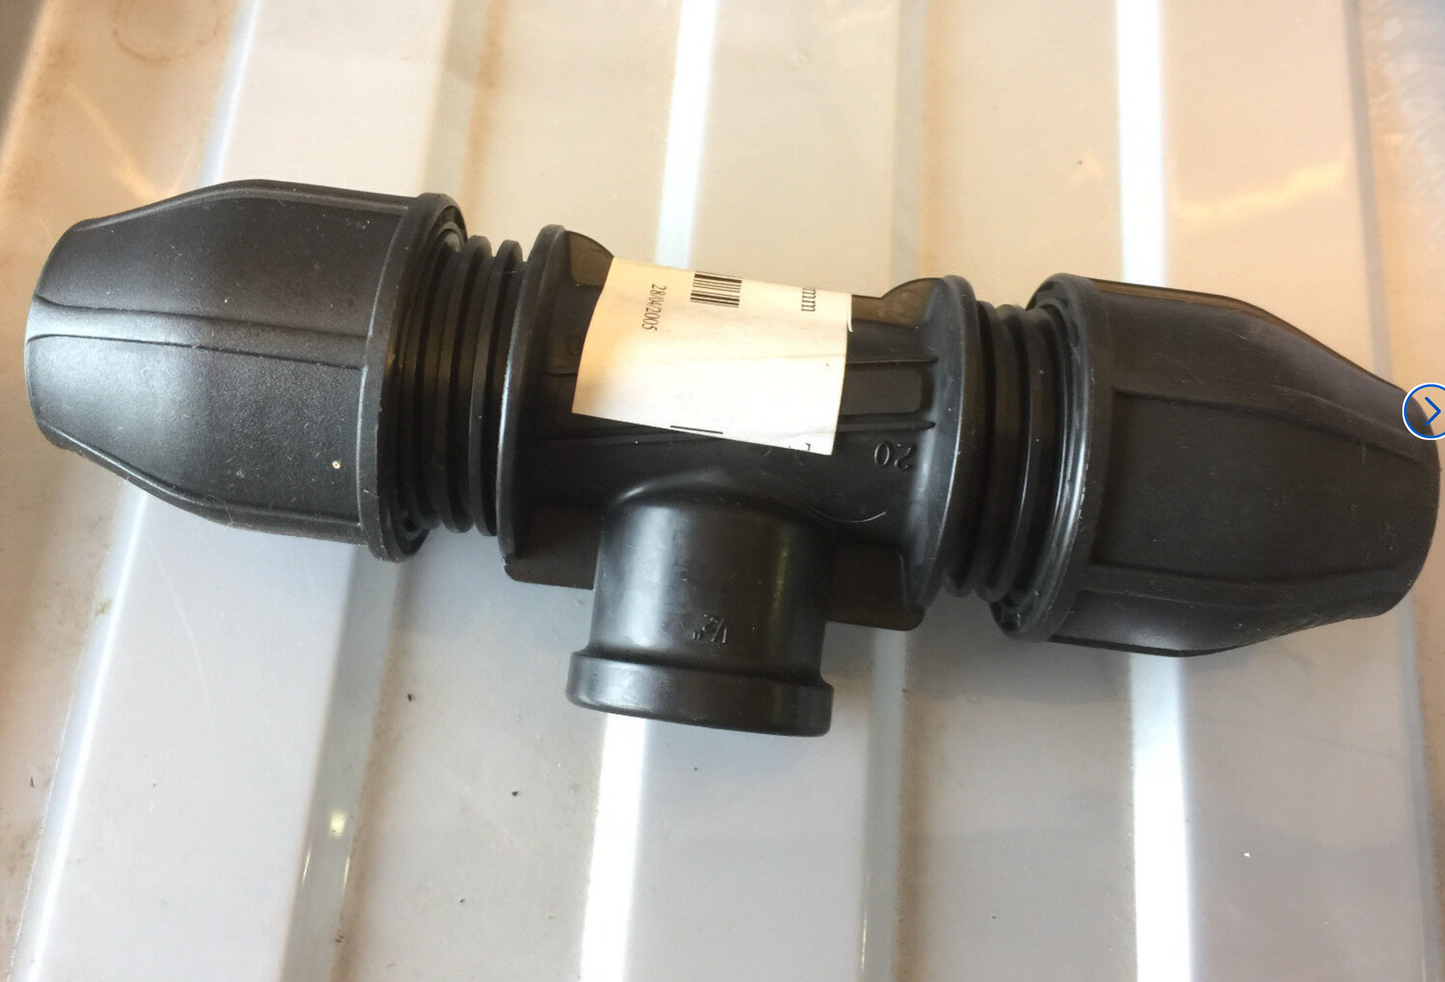 Philmac TEE 20mm Pol x 1/2" BSP FI MDPE + Plastic Water Pipe Connector 